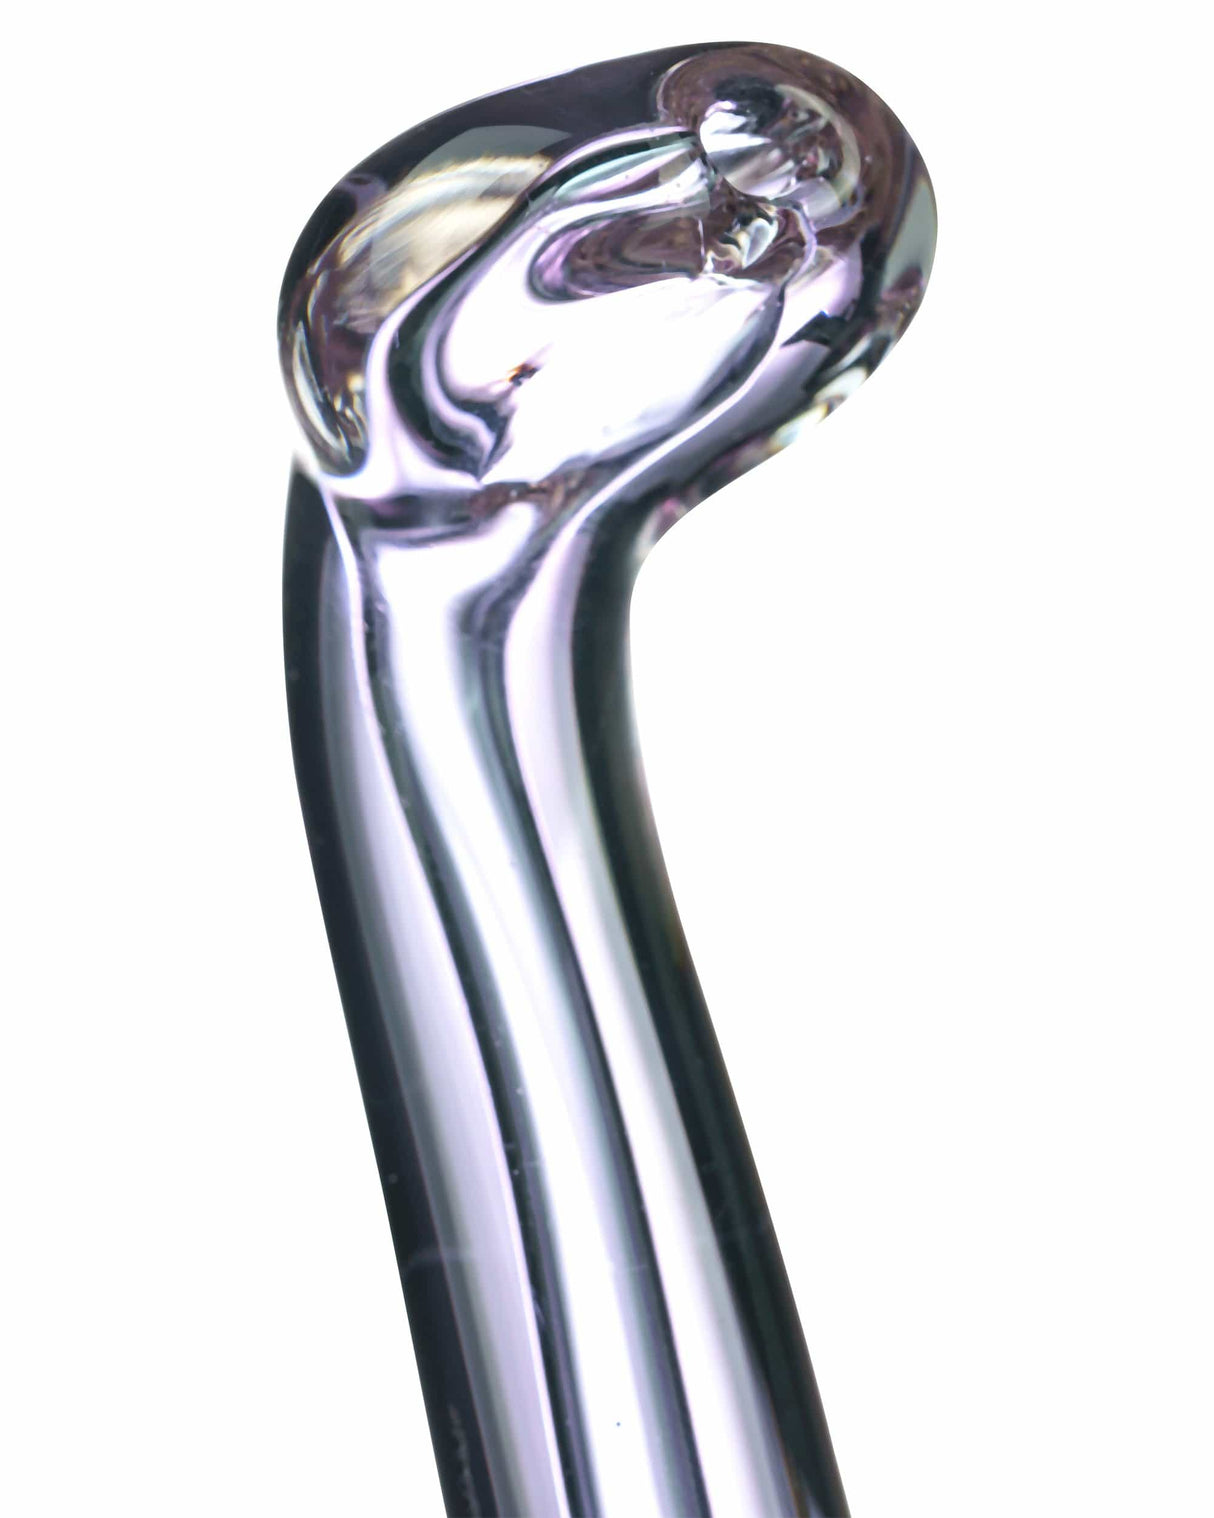 Dankstop Colored Glass Sherlock Bubbler Mouthpiece | Online Headshop | Dank Geek